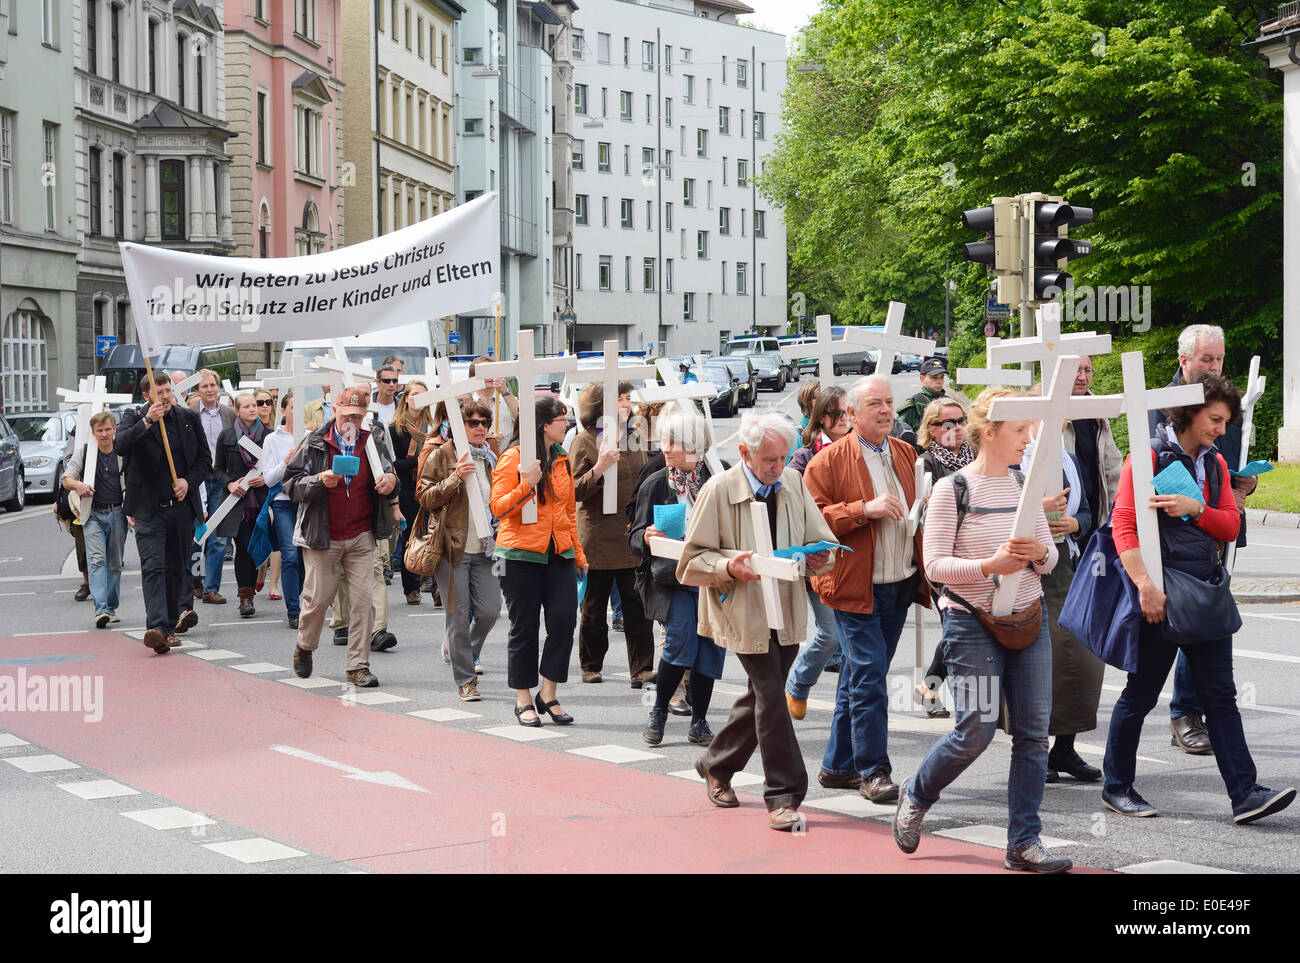 MUNICH, ALLEMAGNE - 10 MAI 2014 : démonstration Anti-Abortion avec les participants portant des croix chrétiennes et des bannières. Banque D'Images